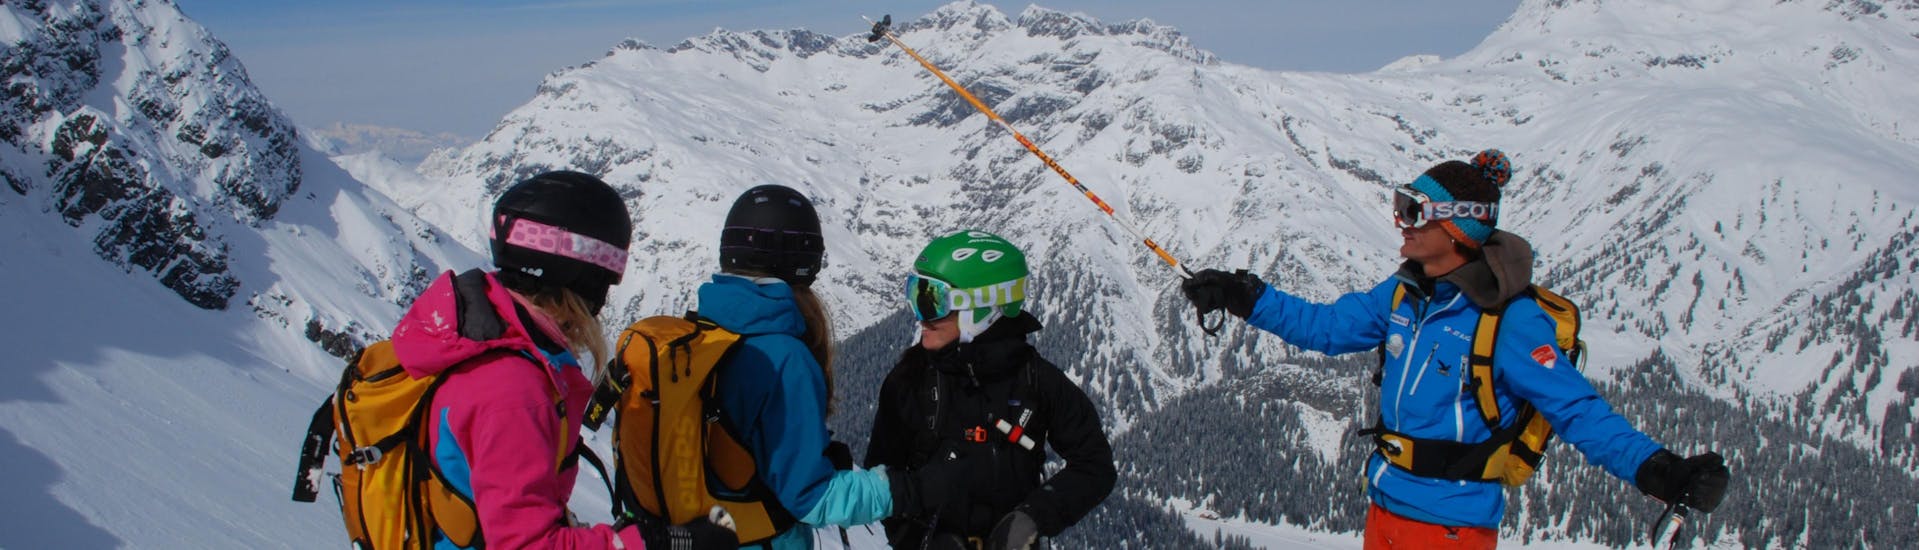 Un groupe de skieurs au sommet de la montagne pendant un Cours particulier de ski pour Enfants à Lech avec Ski School Warth.